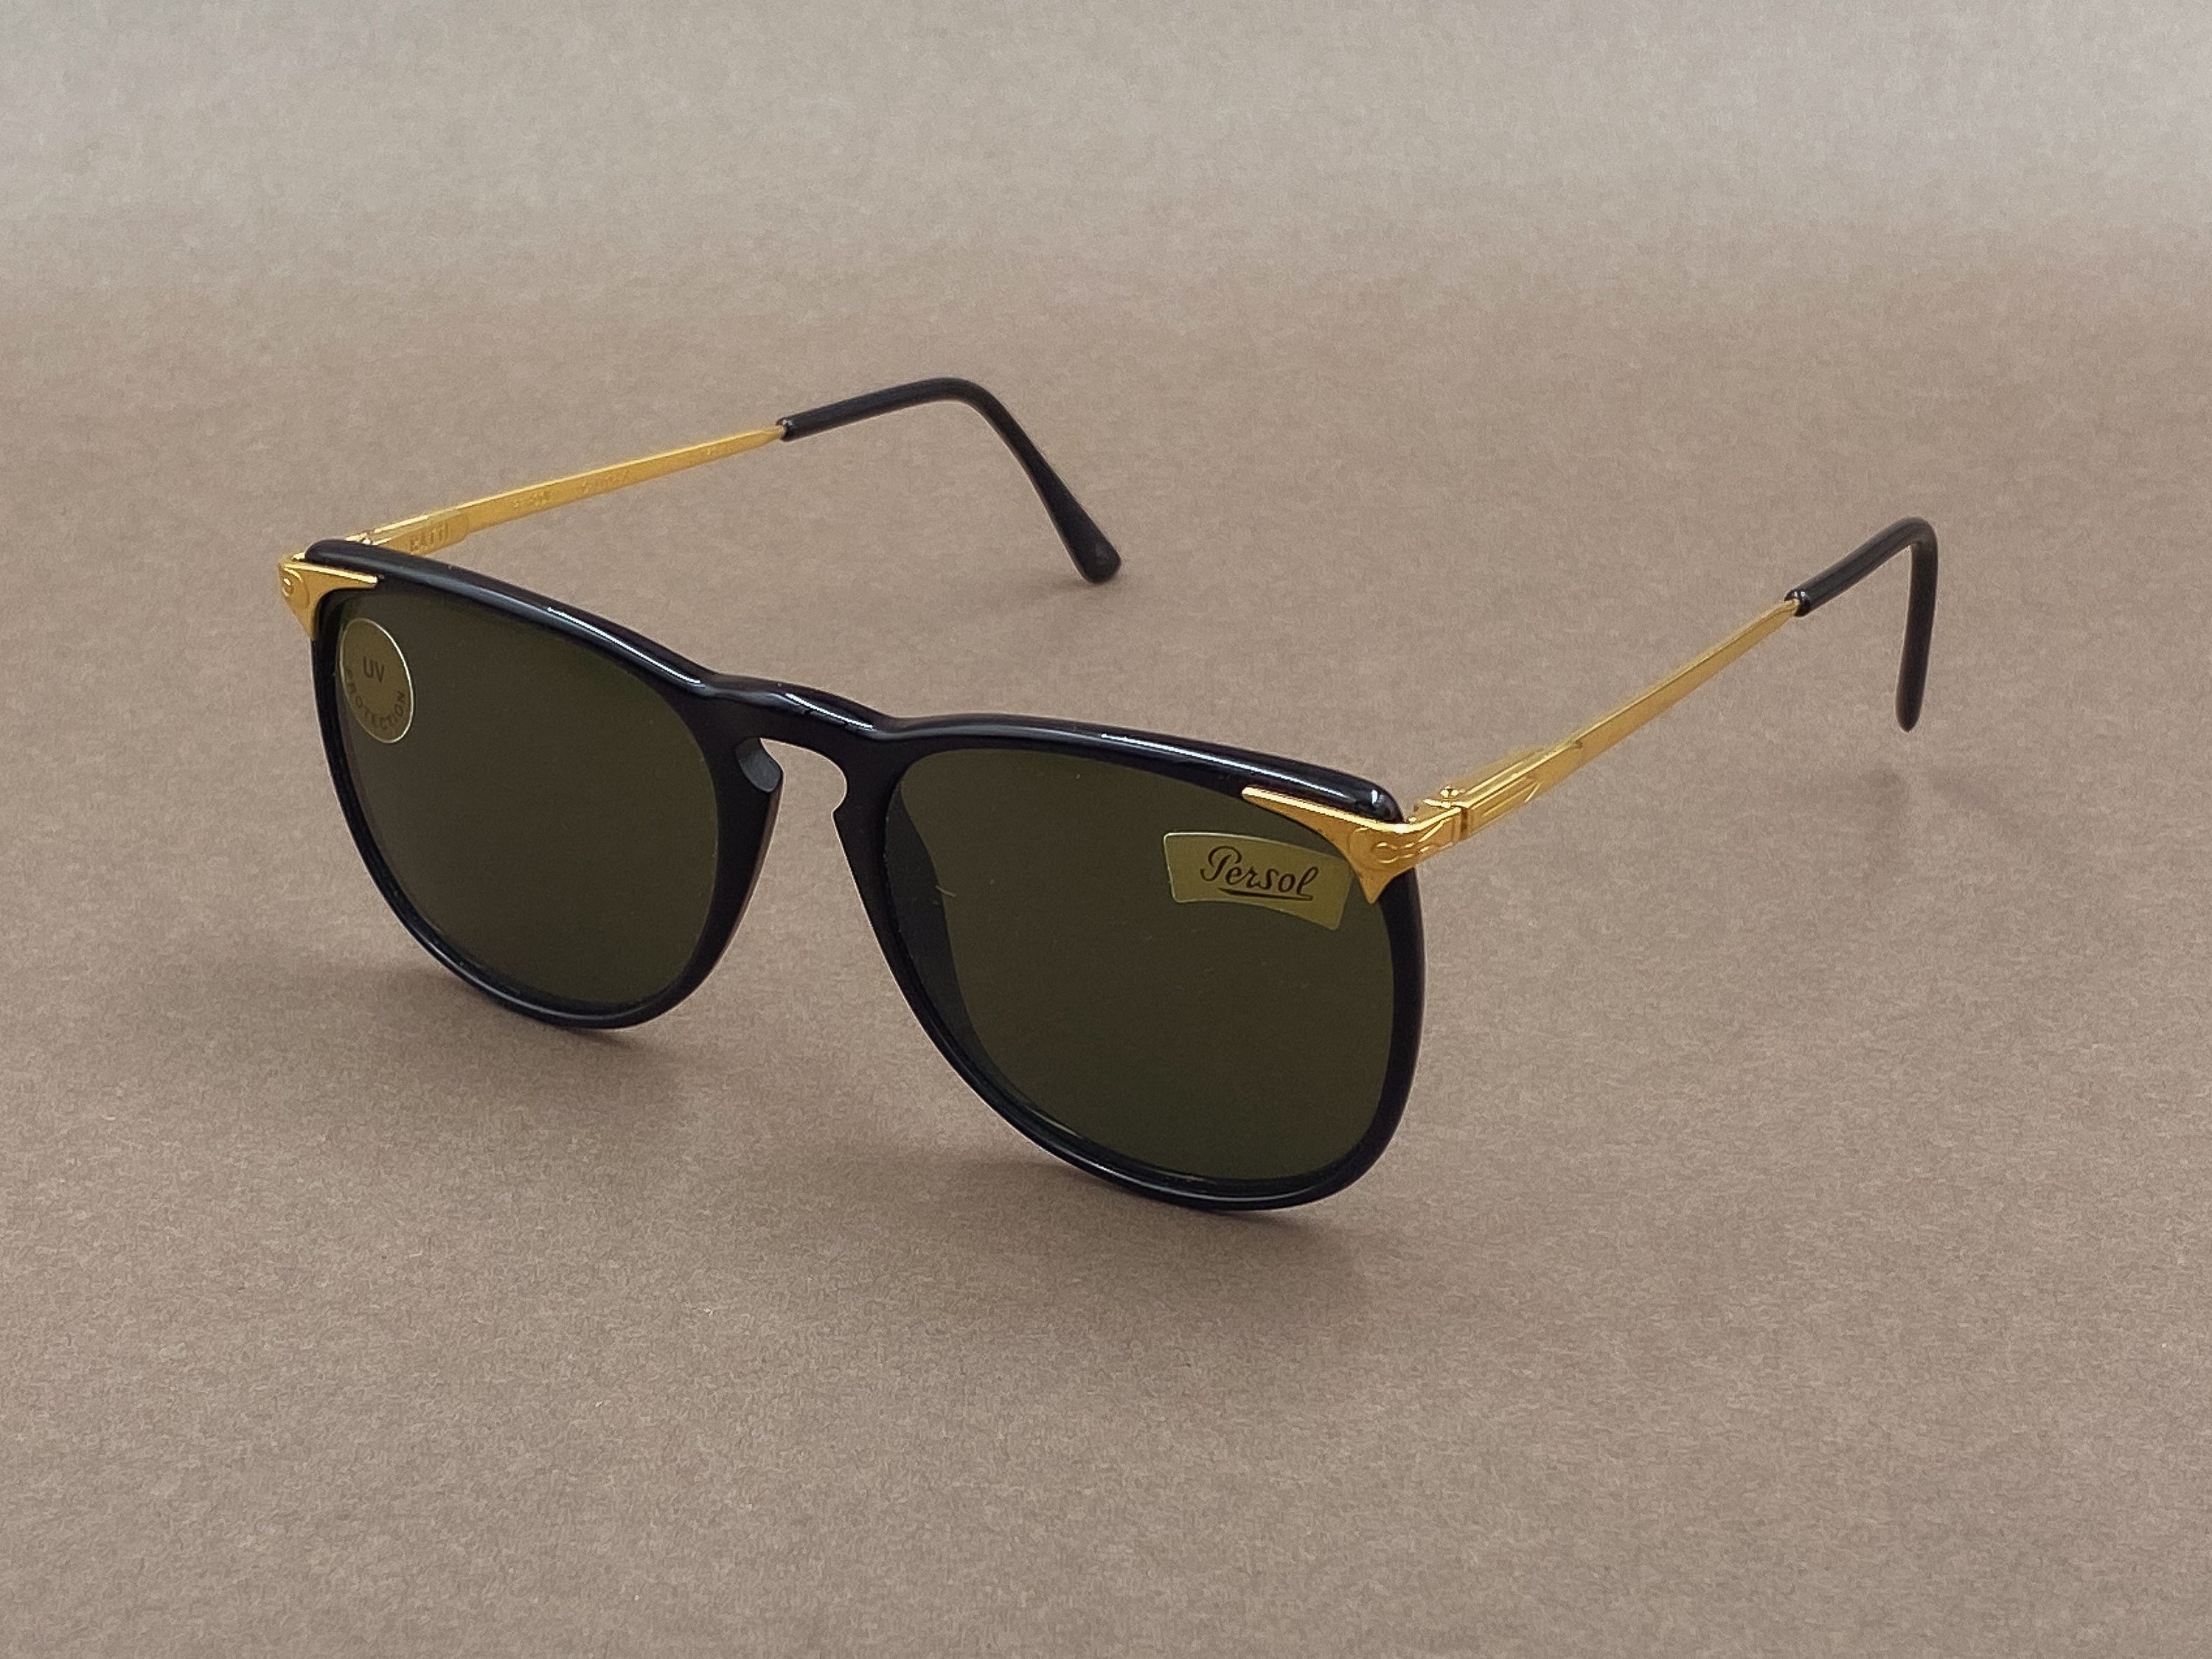 Persol Ratti Cellor 3 sunglasses